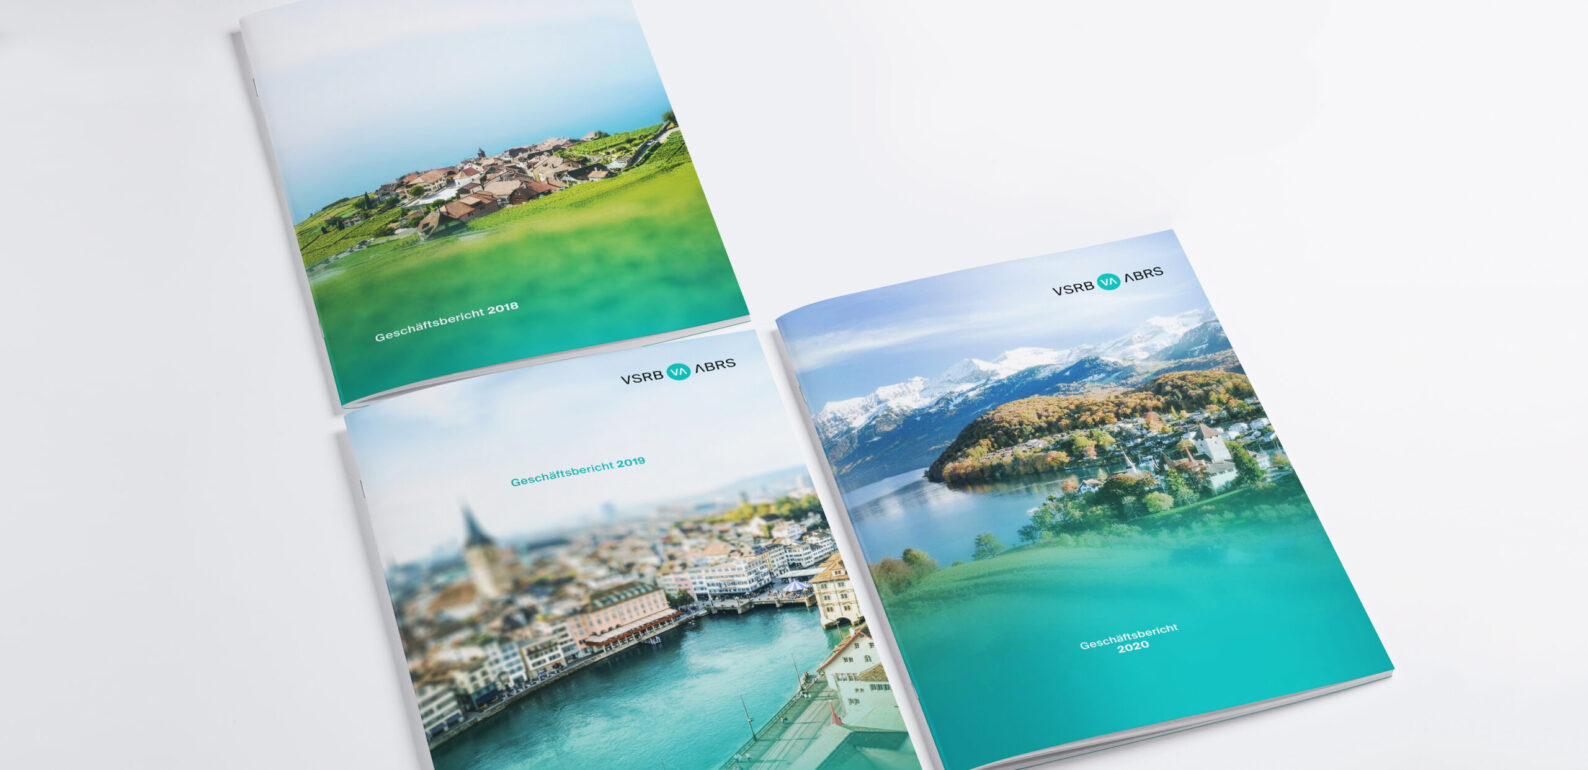 Drei Geschäftsberichte Covers von Verband Schweizer Regionalbanken, Geschäftsberichte